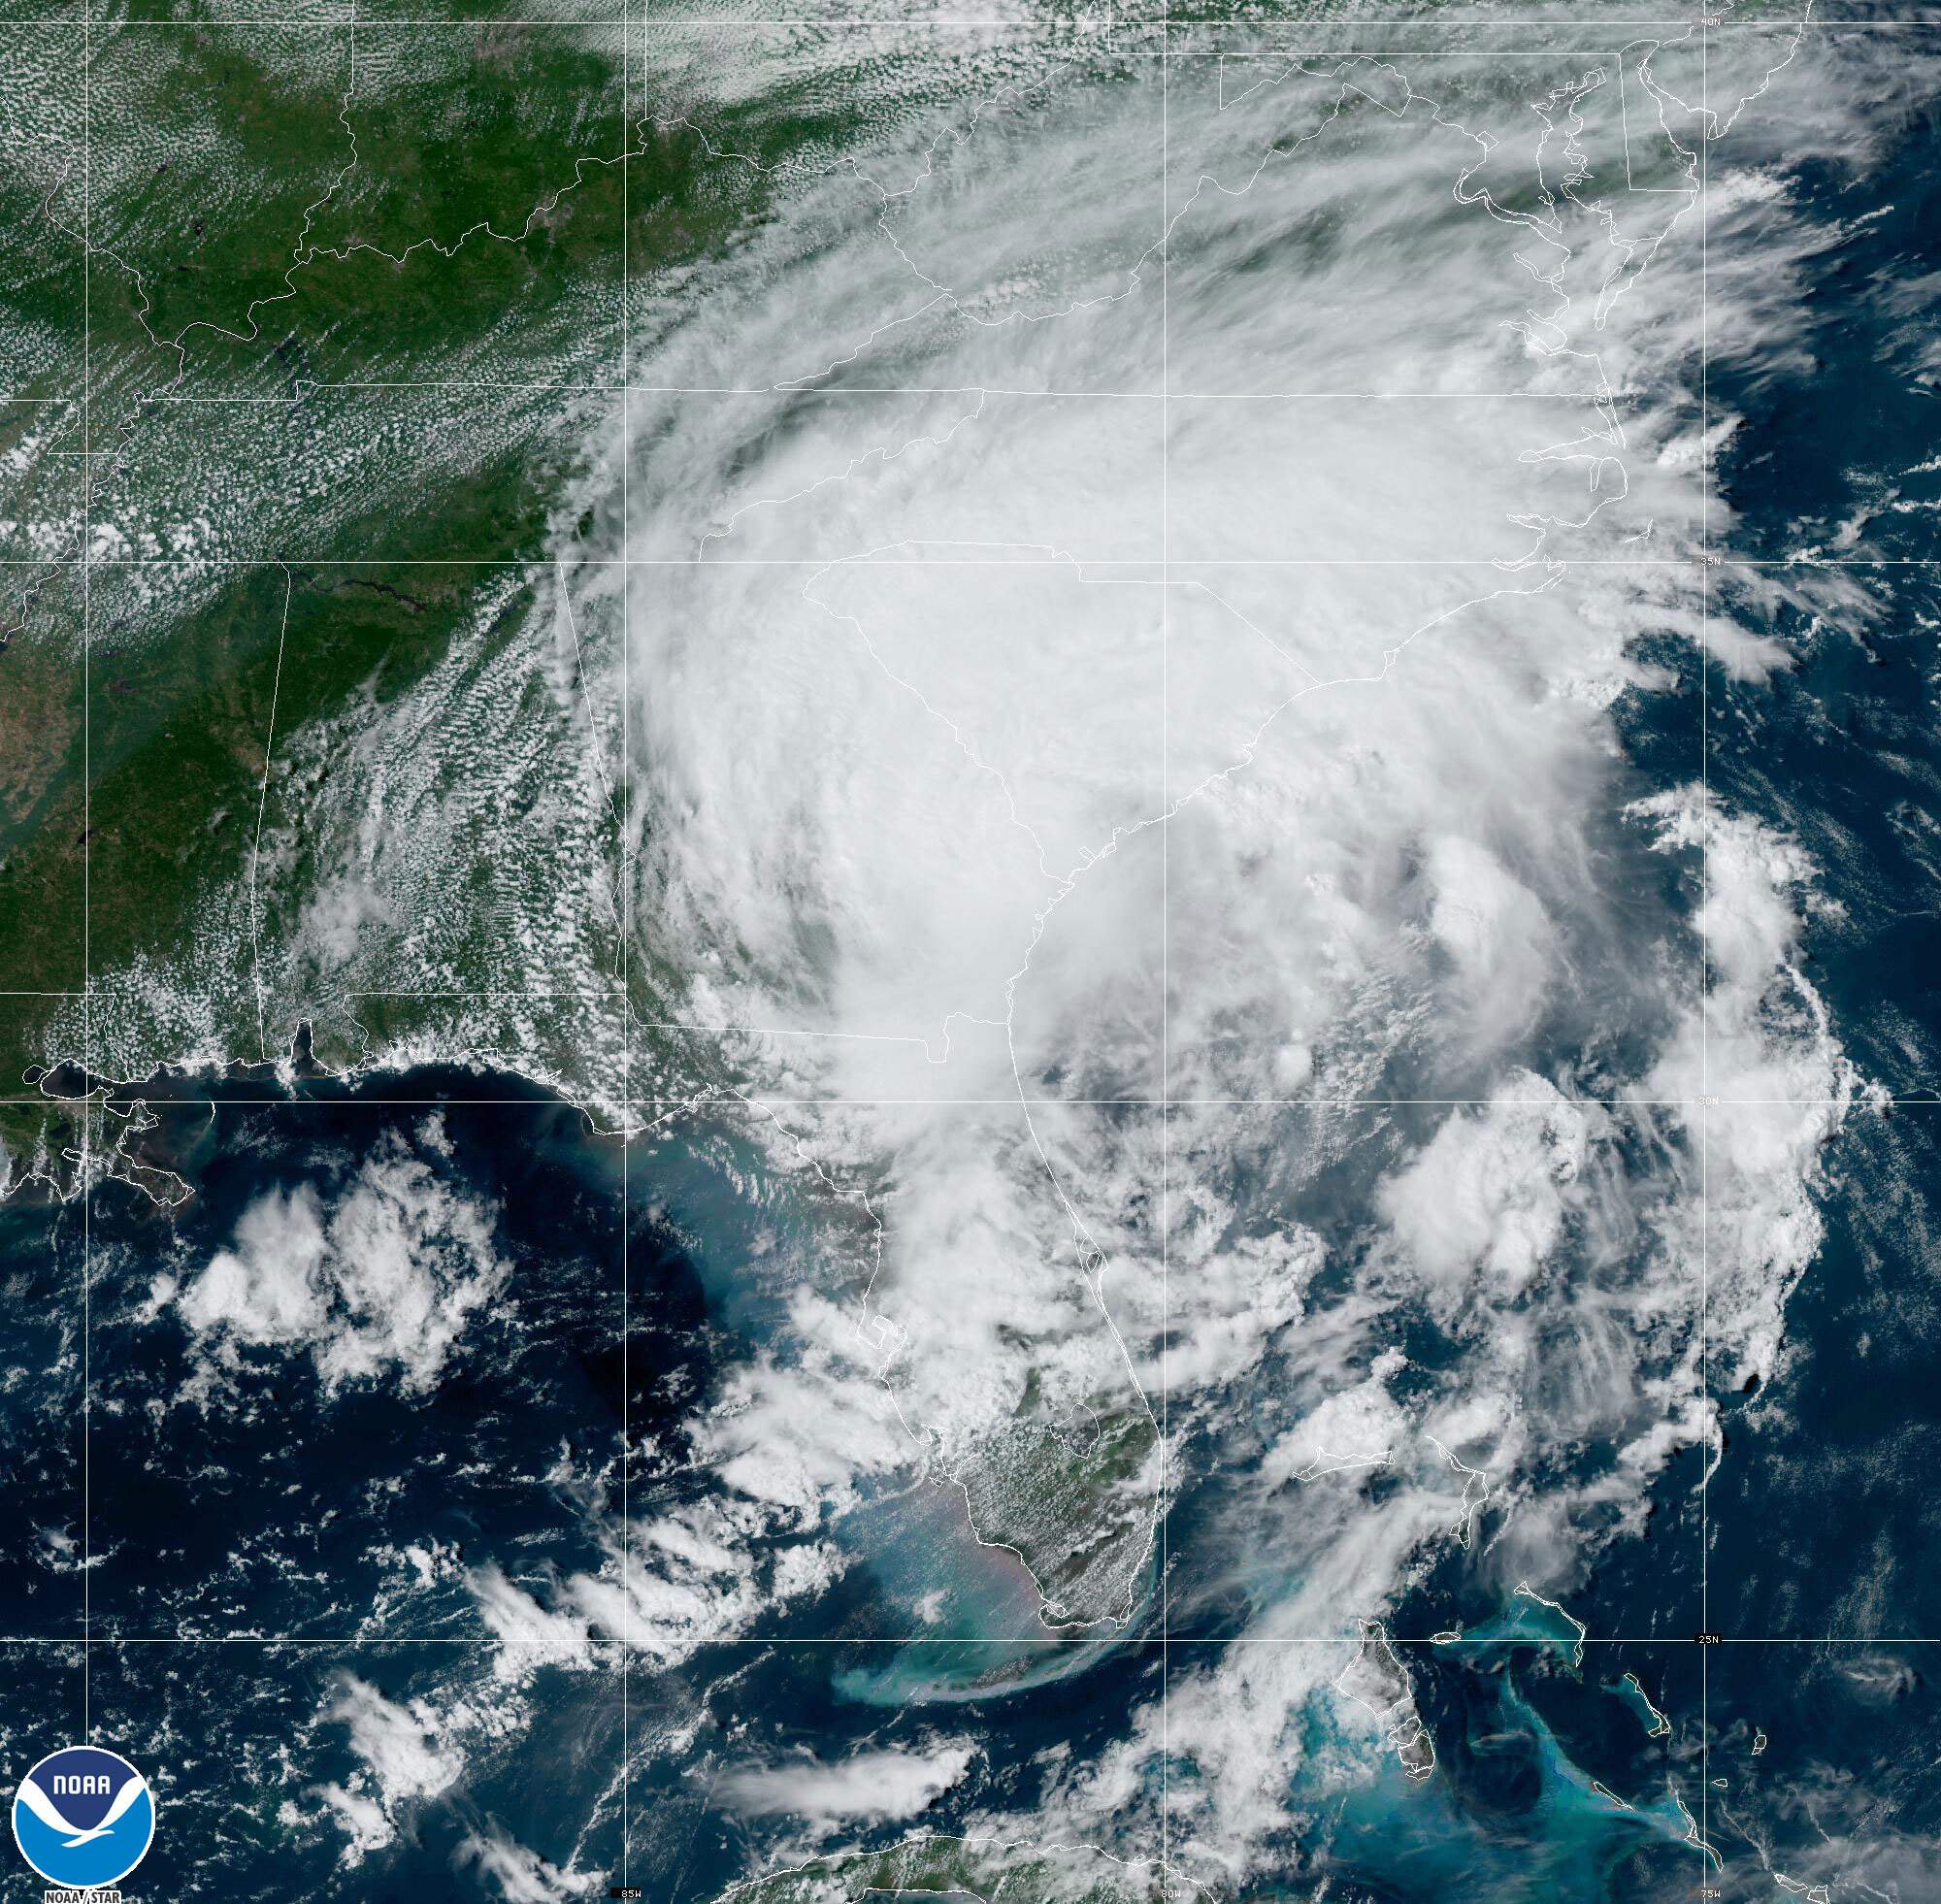 米東部時間３０日午後３時４９分に撮影されたハリケーンの衛星写真。ジョージア、サウスカロライナ、ノースカロライナ各州にかかっているように見える/NOAA